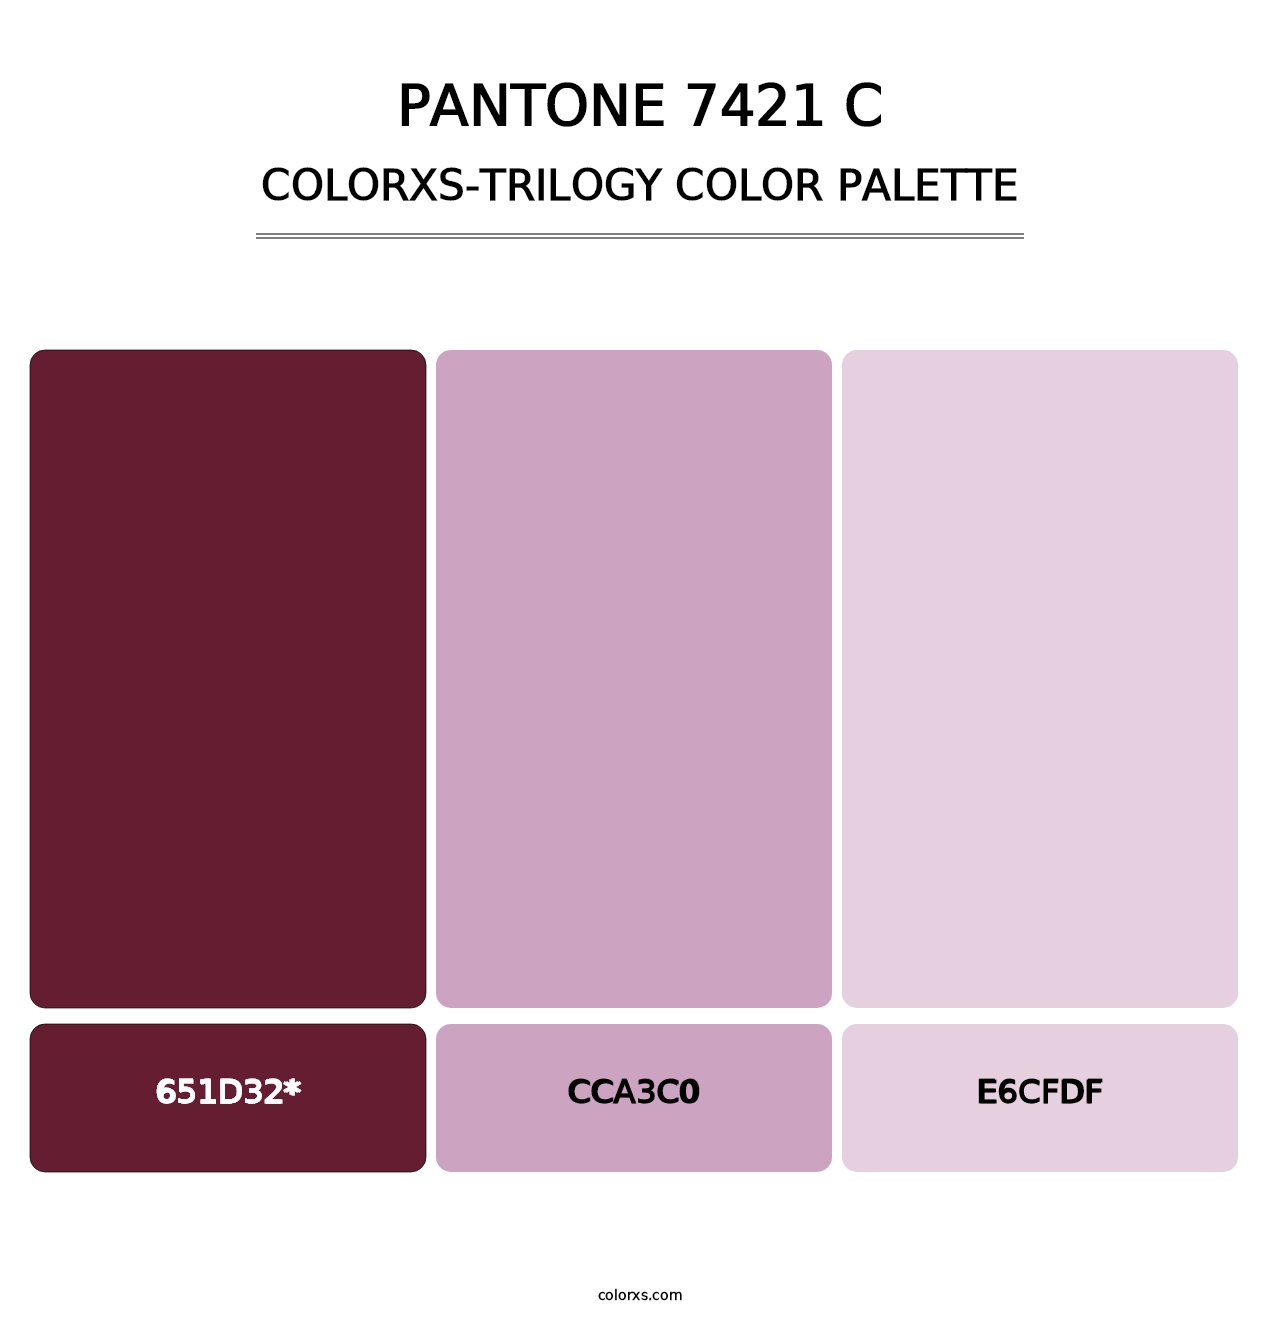 PANTONE 7421 C - Colorxs Trilogy Palette